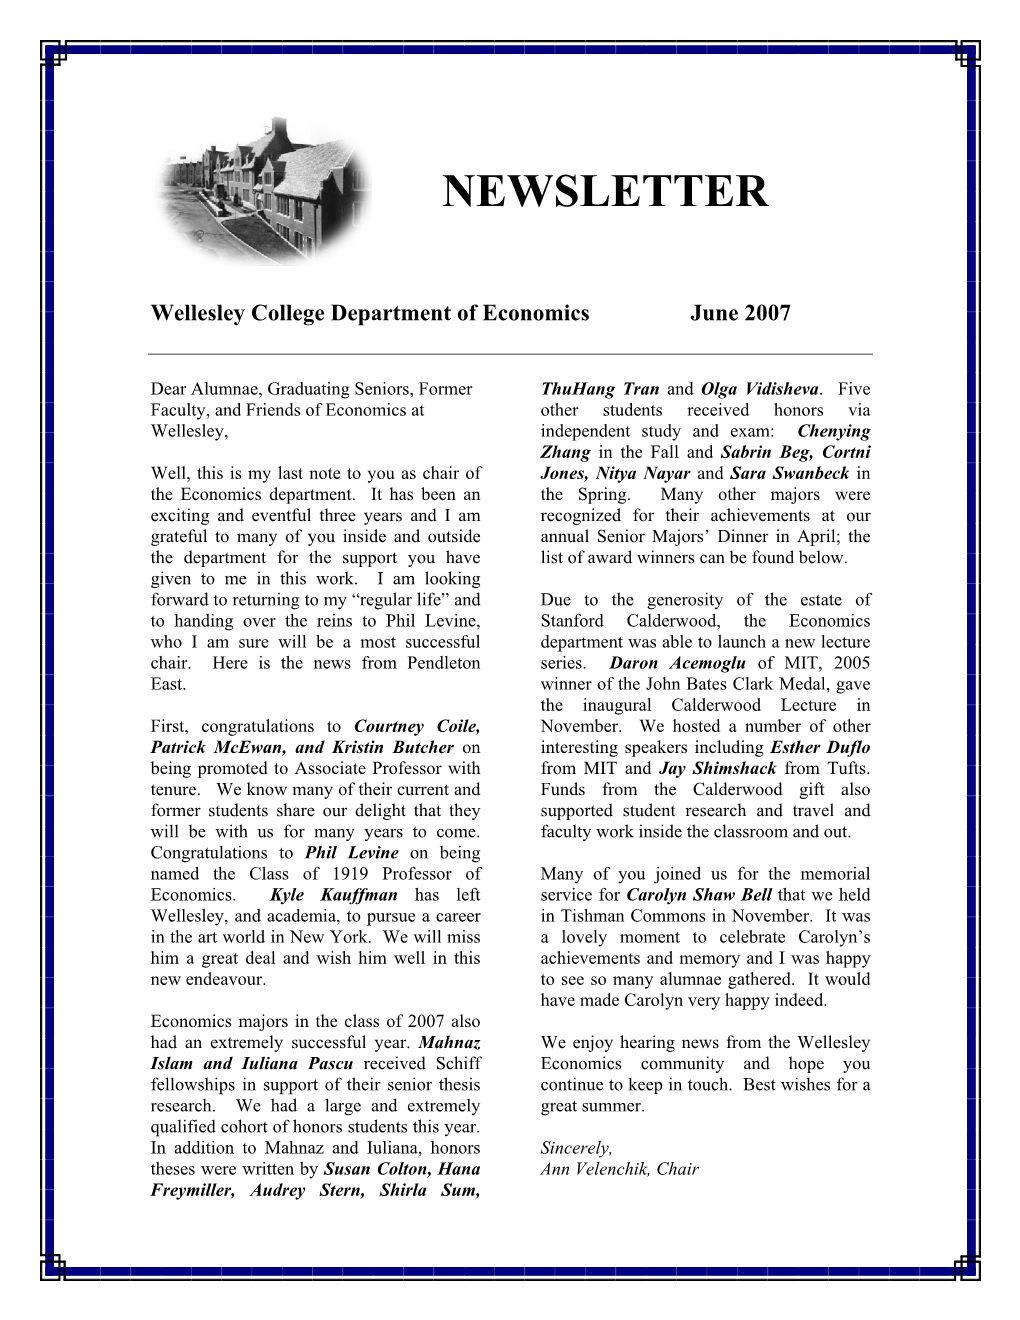 Newsletter 2007